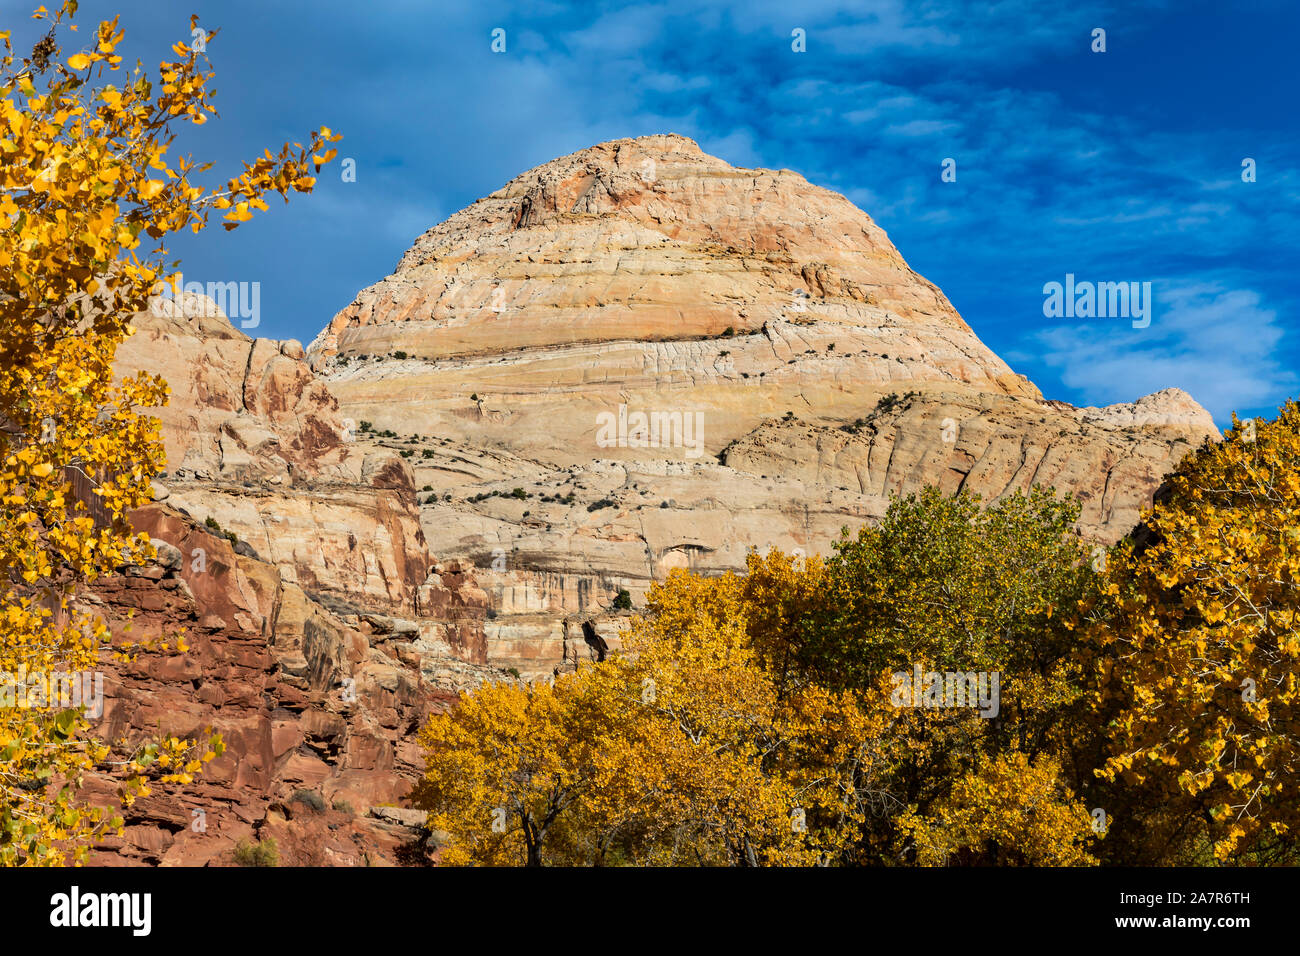 Los colores del otoño en los árboles que enmarcan la formación conocida como cúpula del Capitolio, el homónimo de Capitol Reef National Park, Utah, EE.UU.. Los primeros pobladores de la Foto de stock